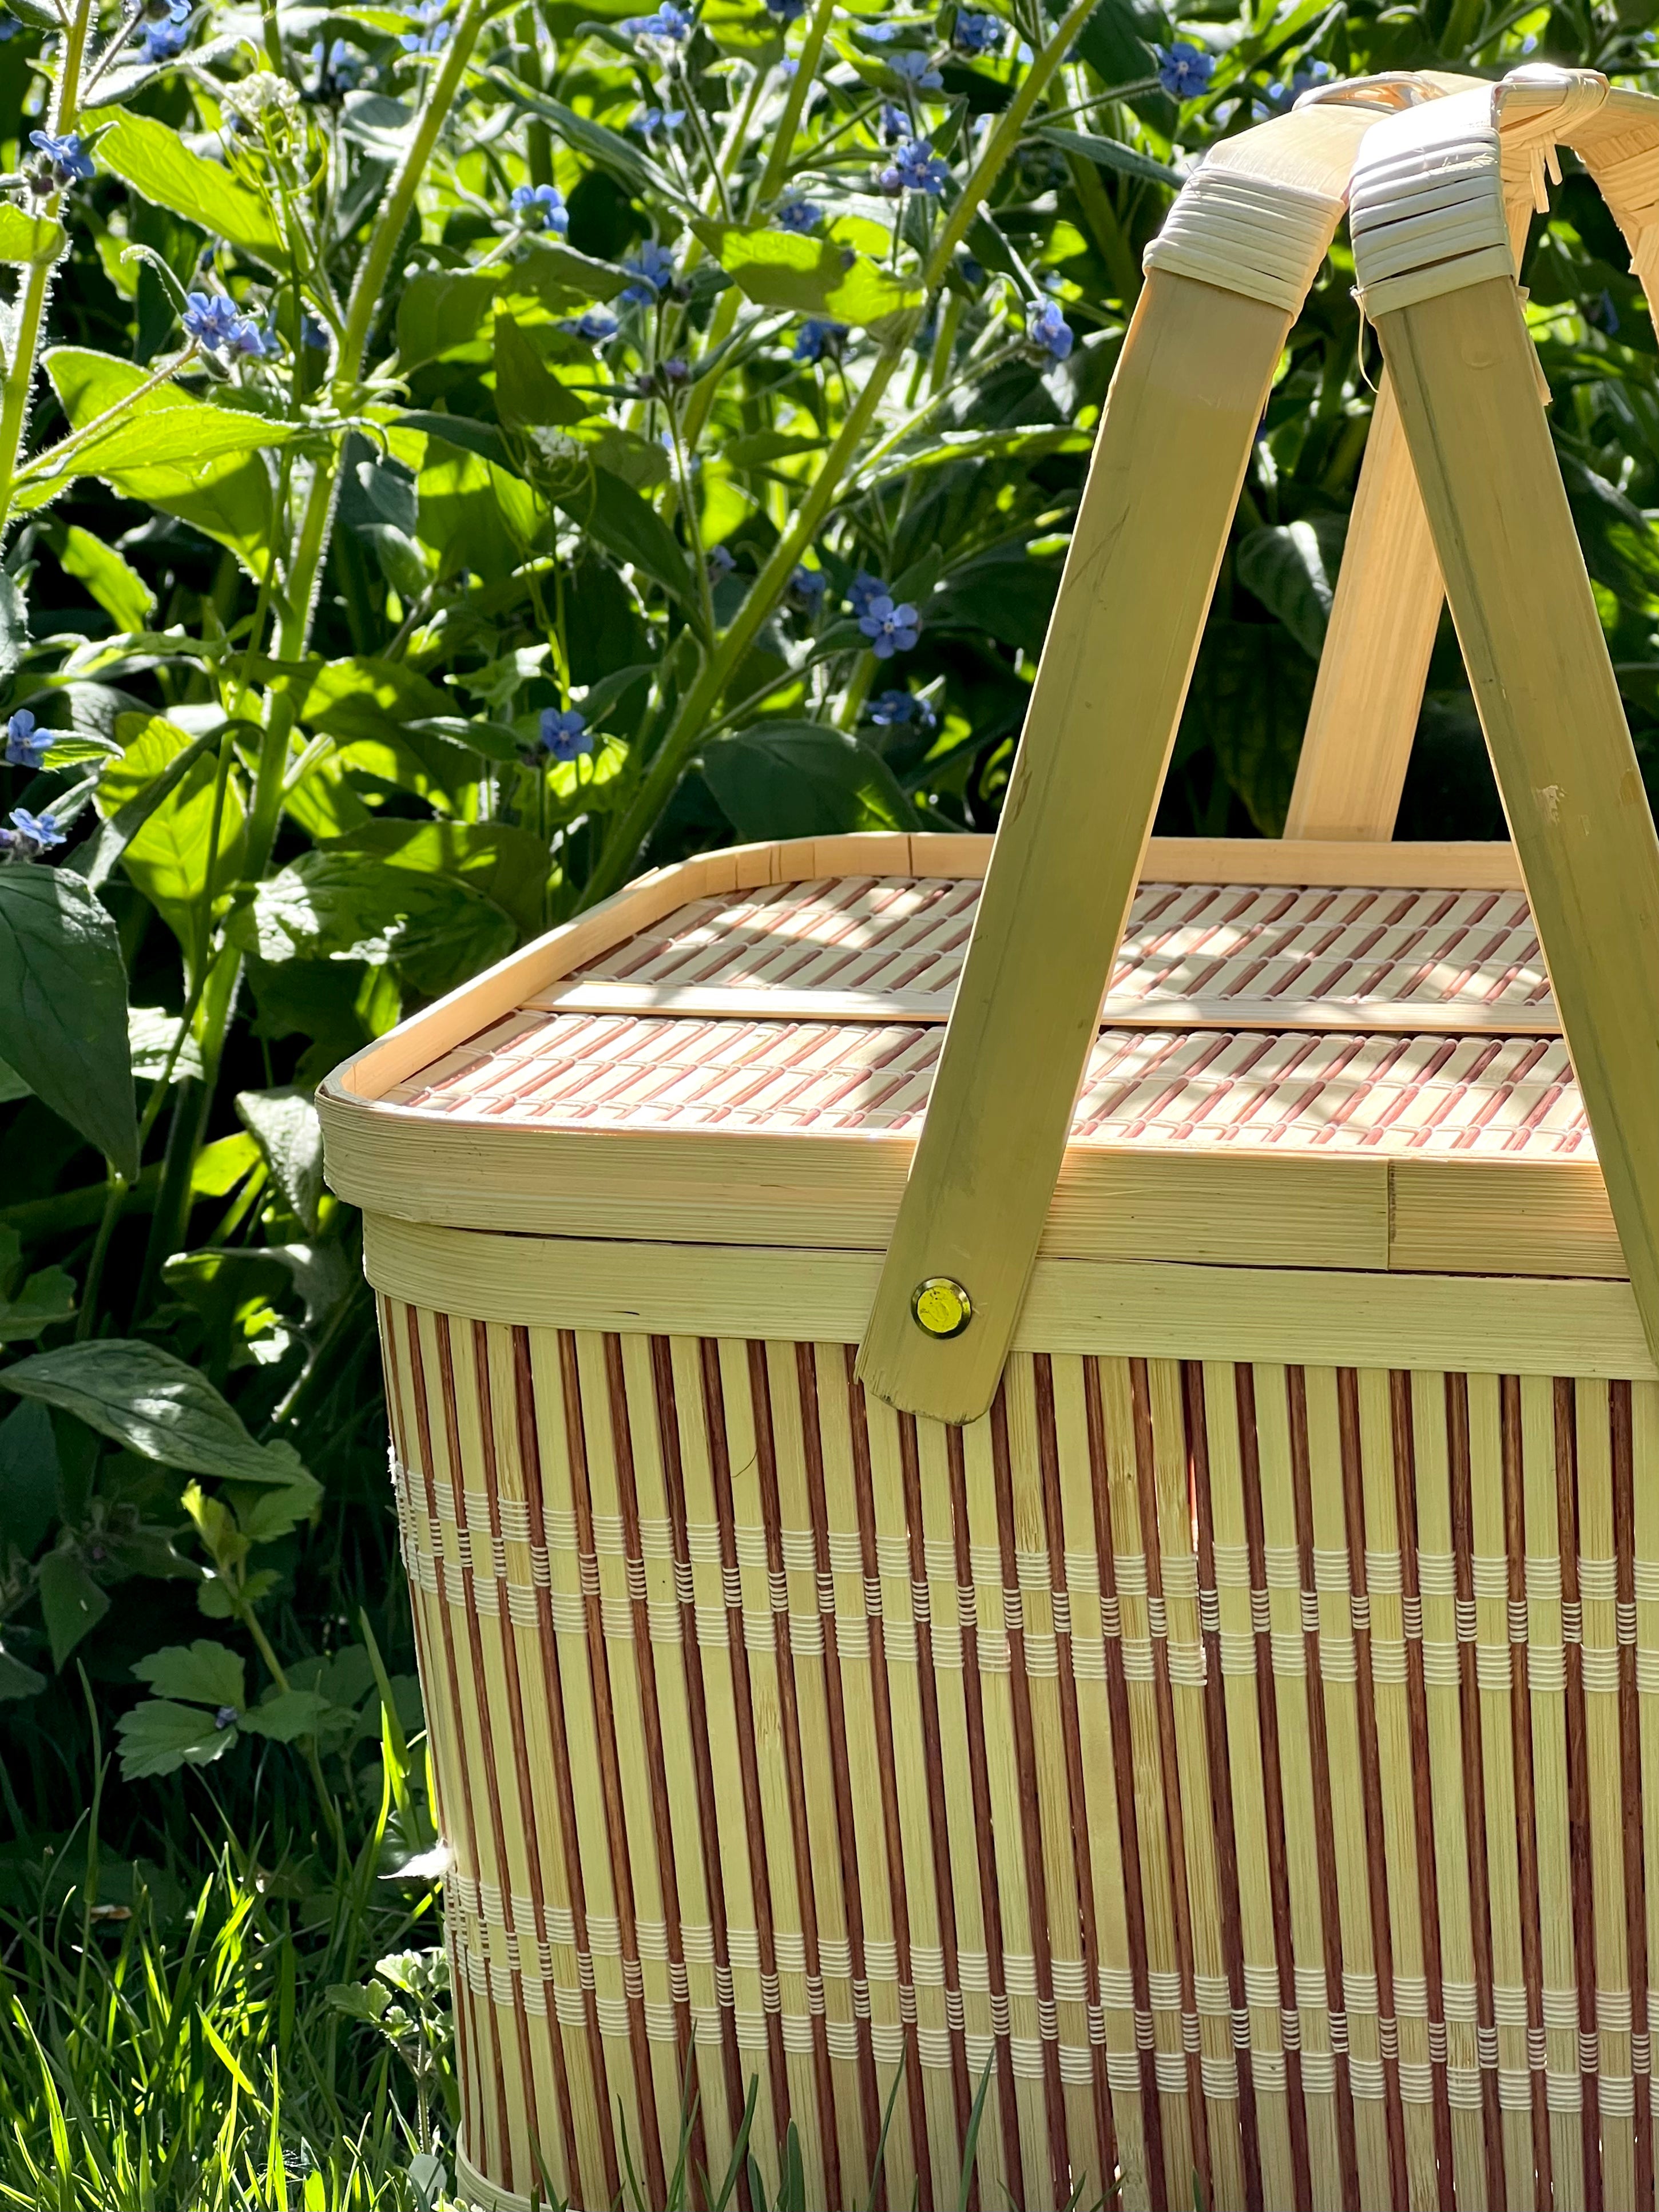 Bamboo basket with handle